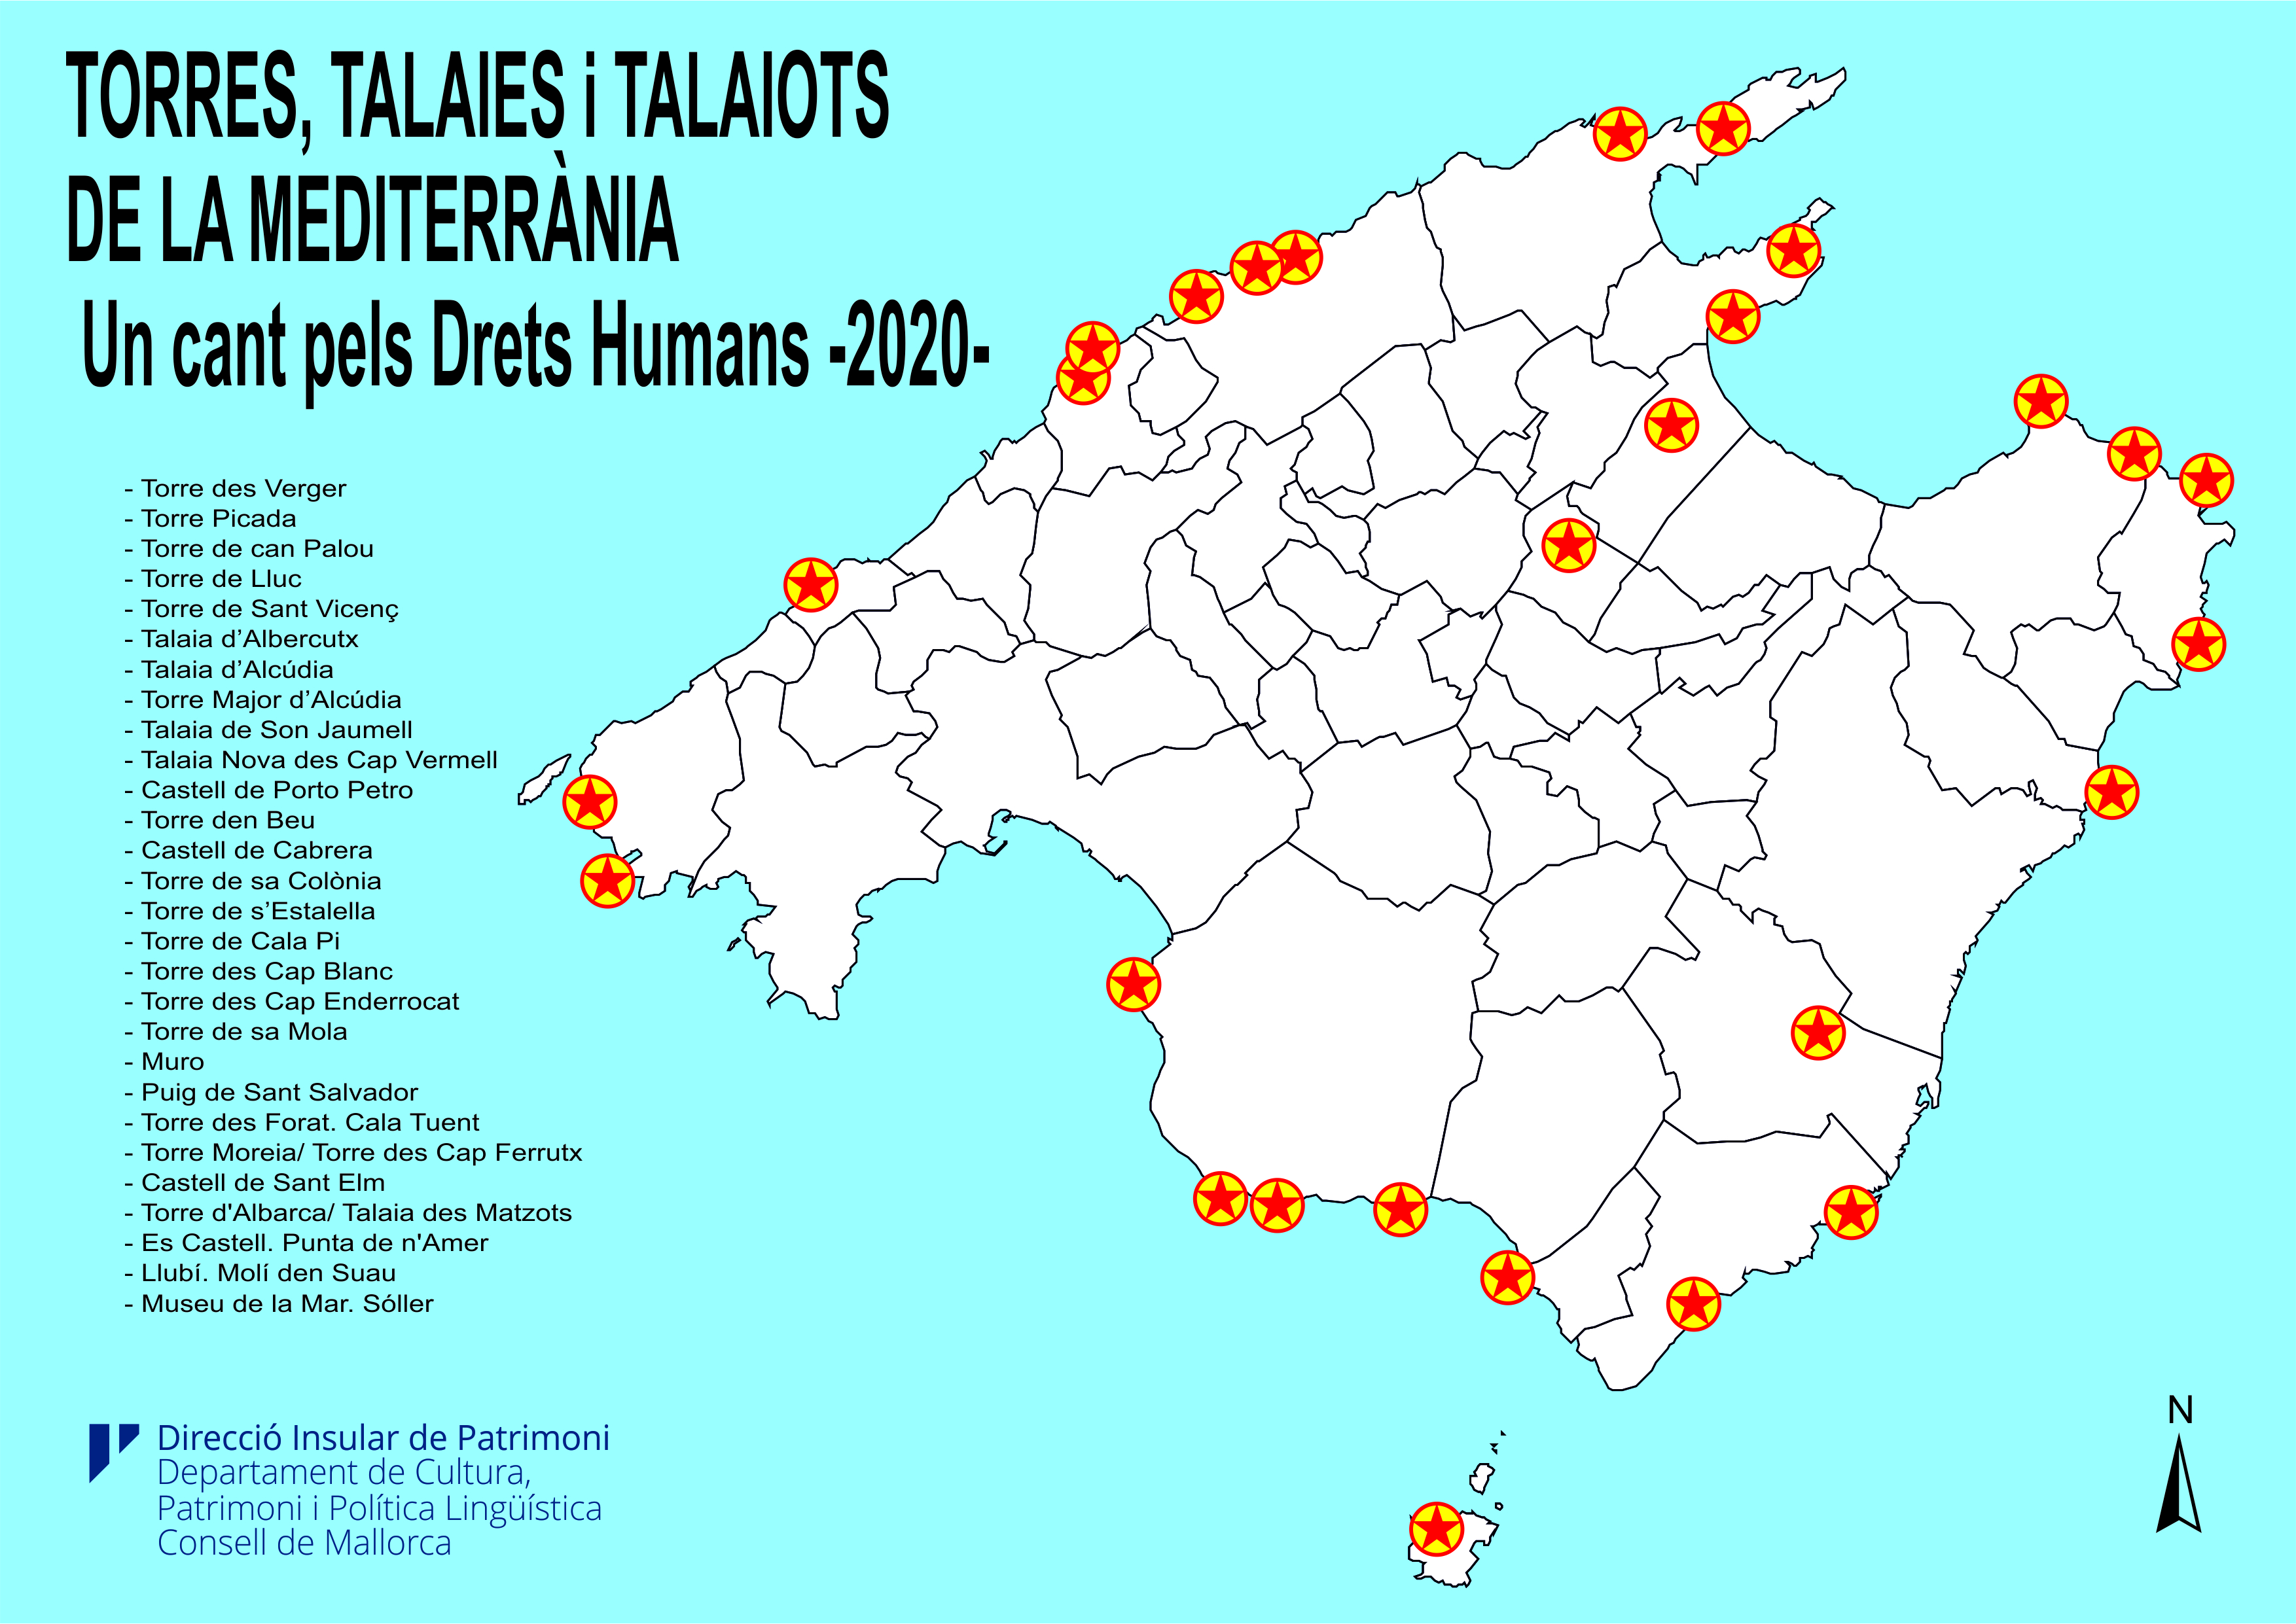 Mapa provisional Encesa Torres, talaies i Talaiots un cant pels drets humans